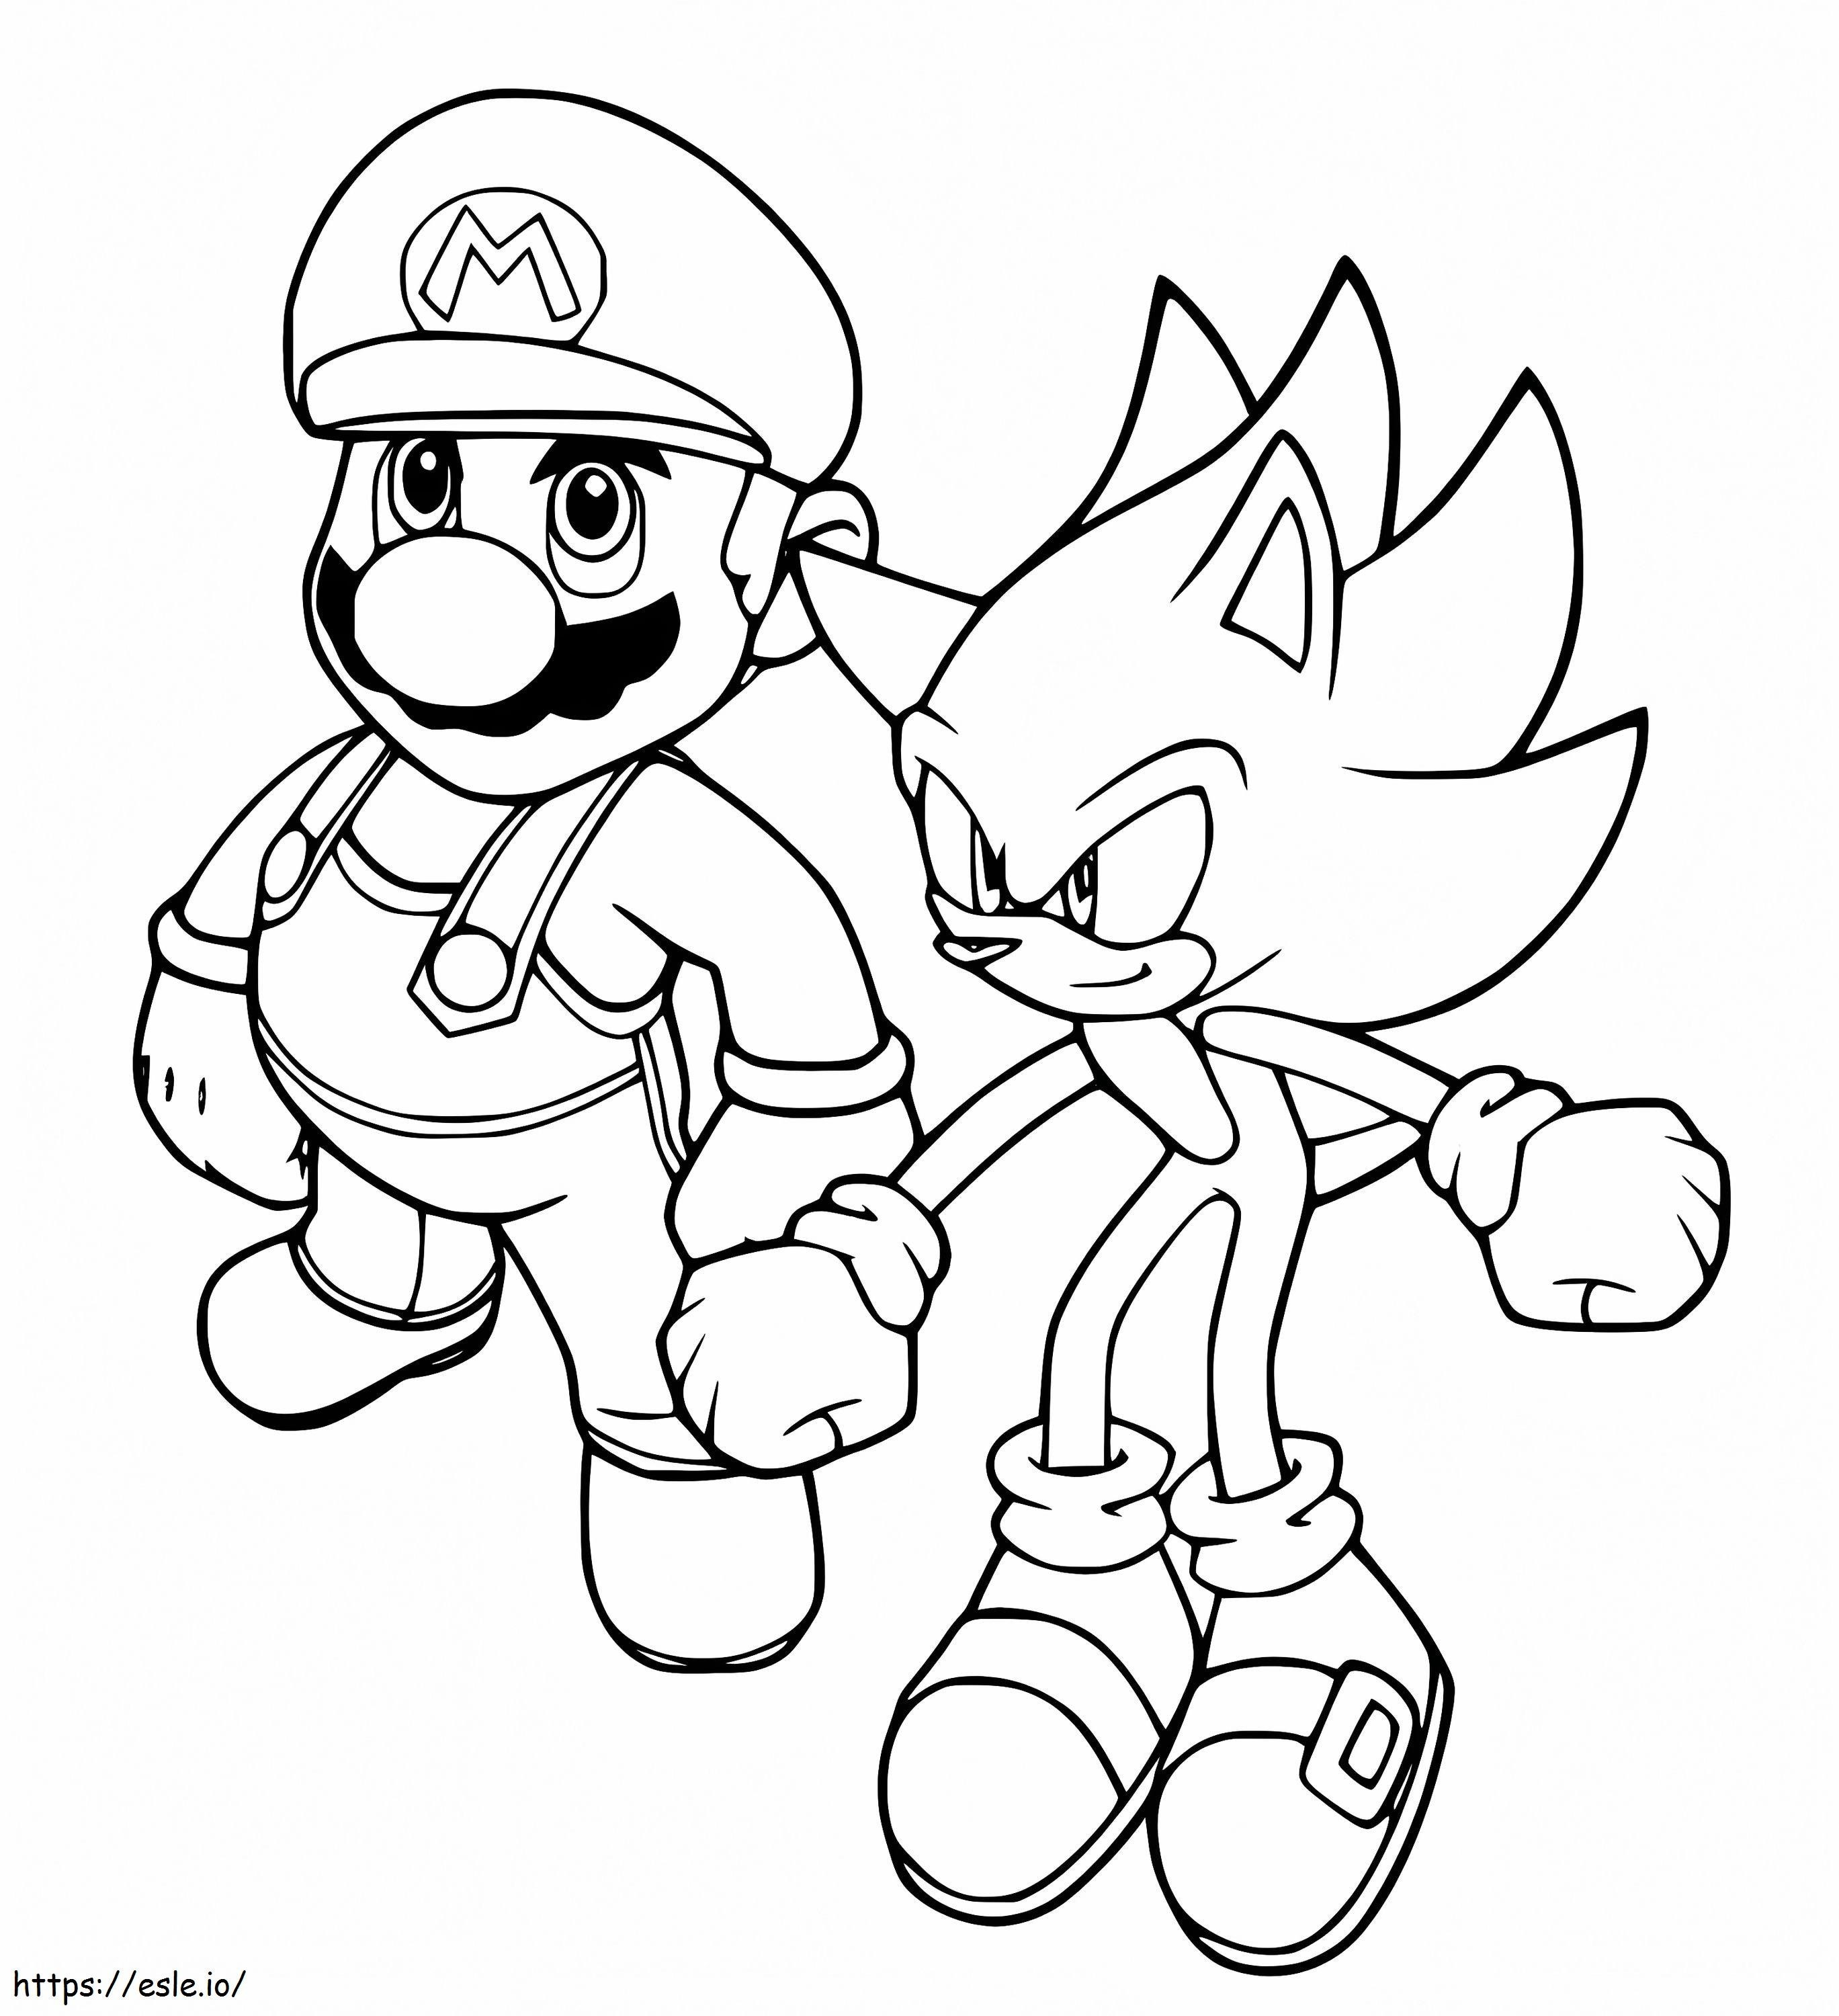 Mario ve Sonic boyama